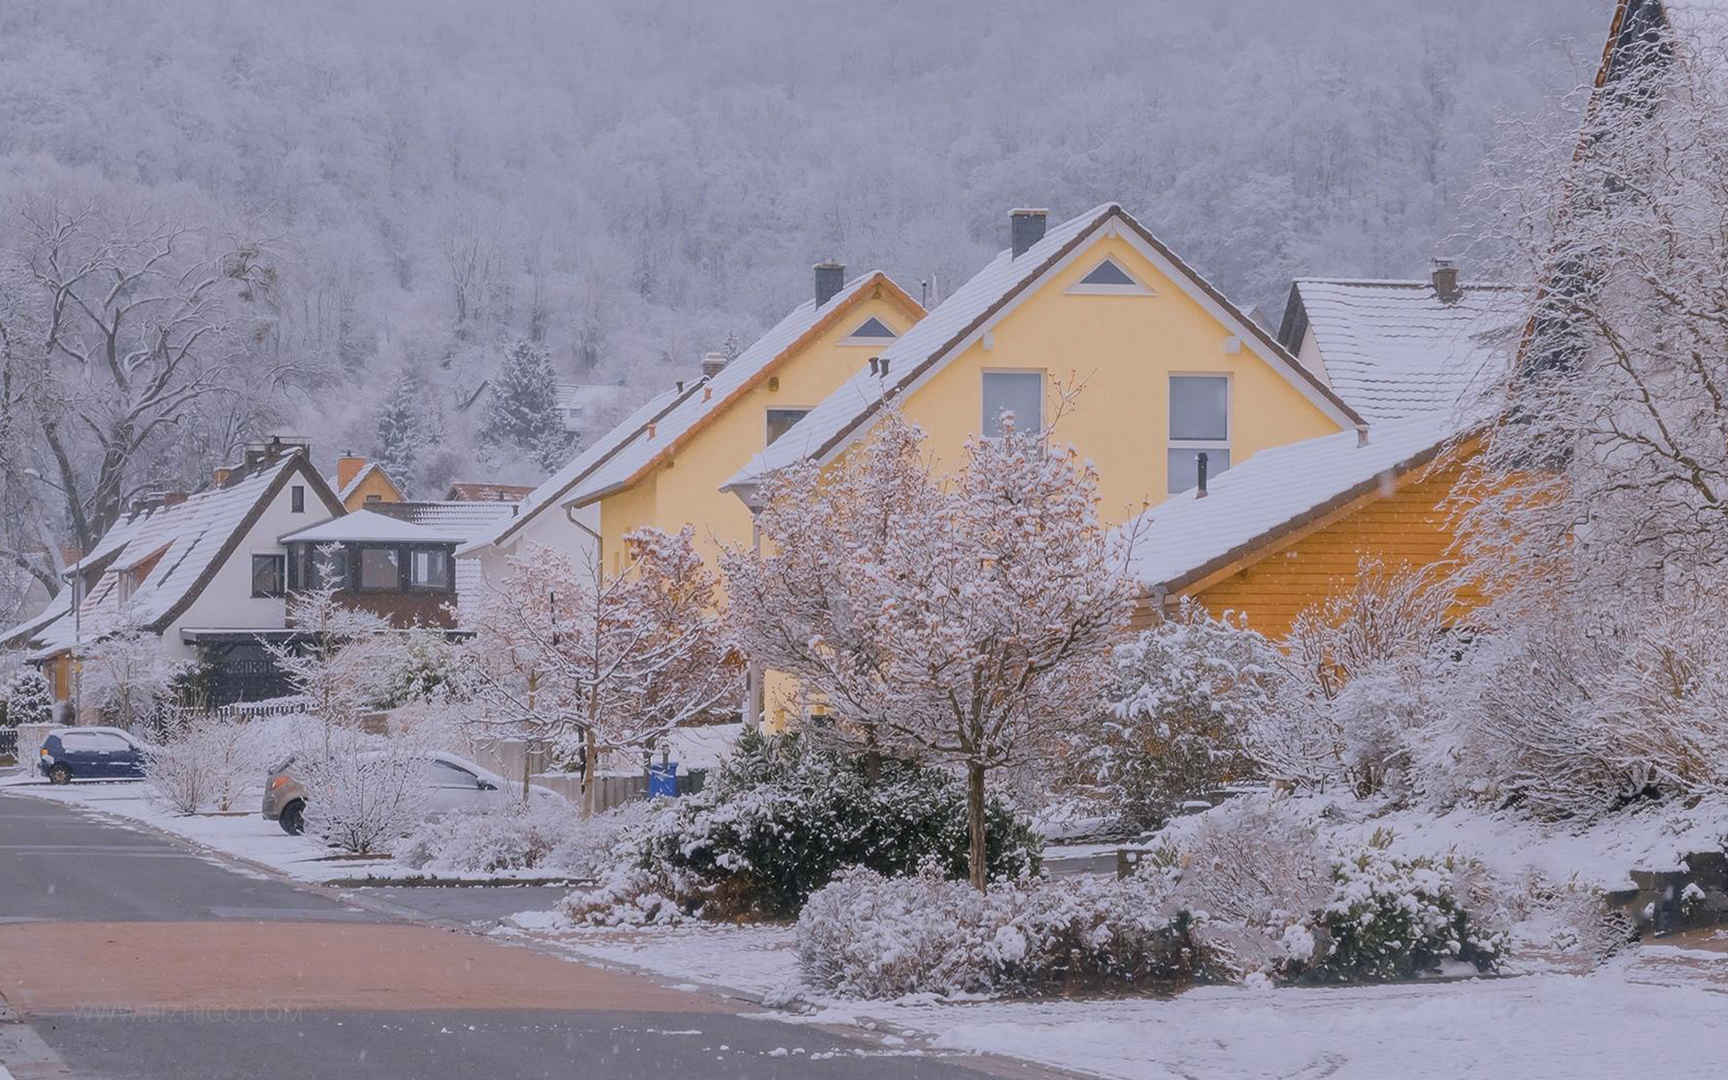 雪覆盖的房屋与树木风景图电脑壁纸